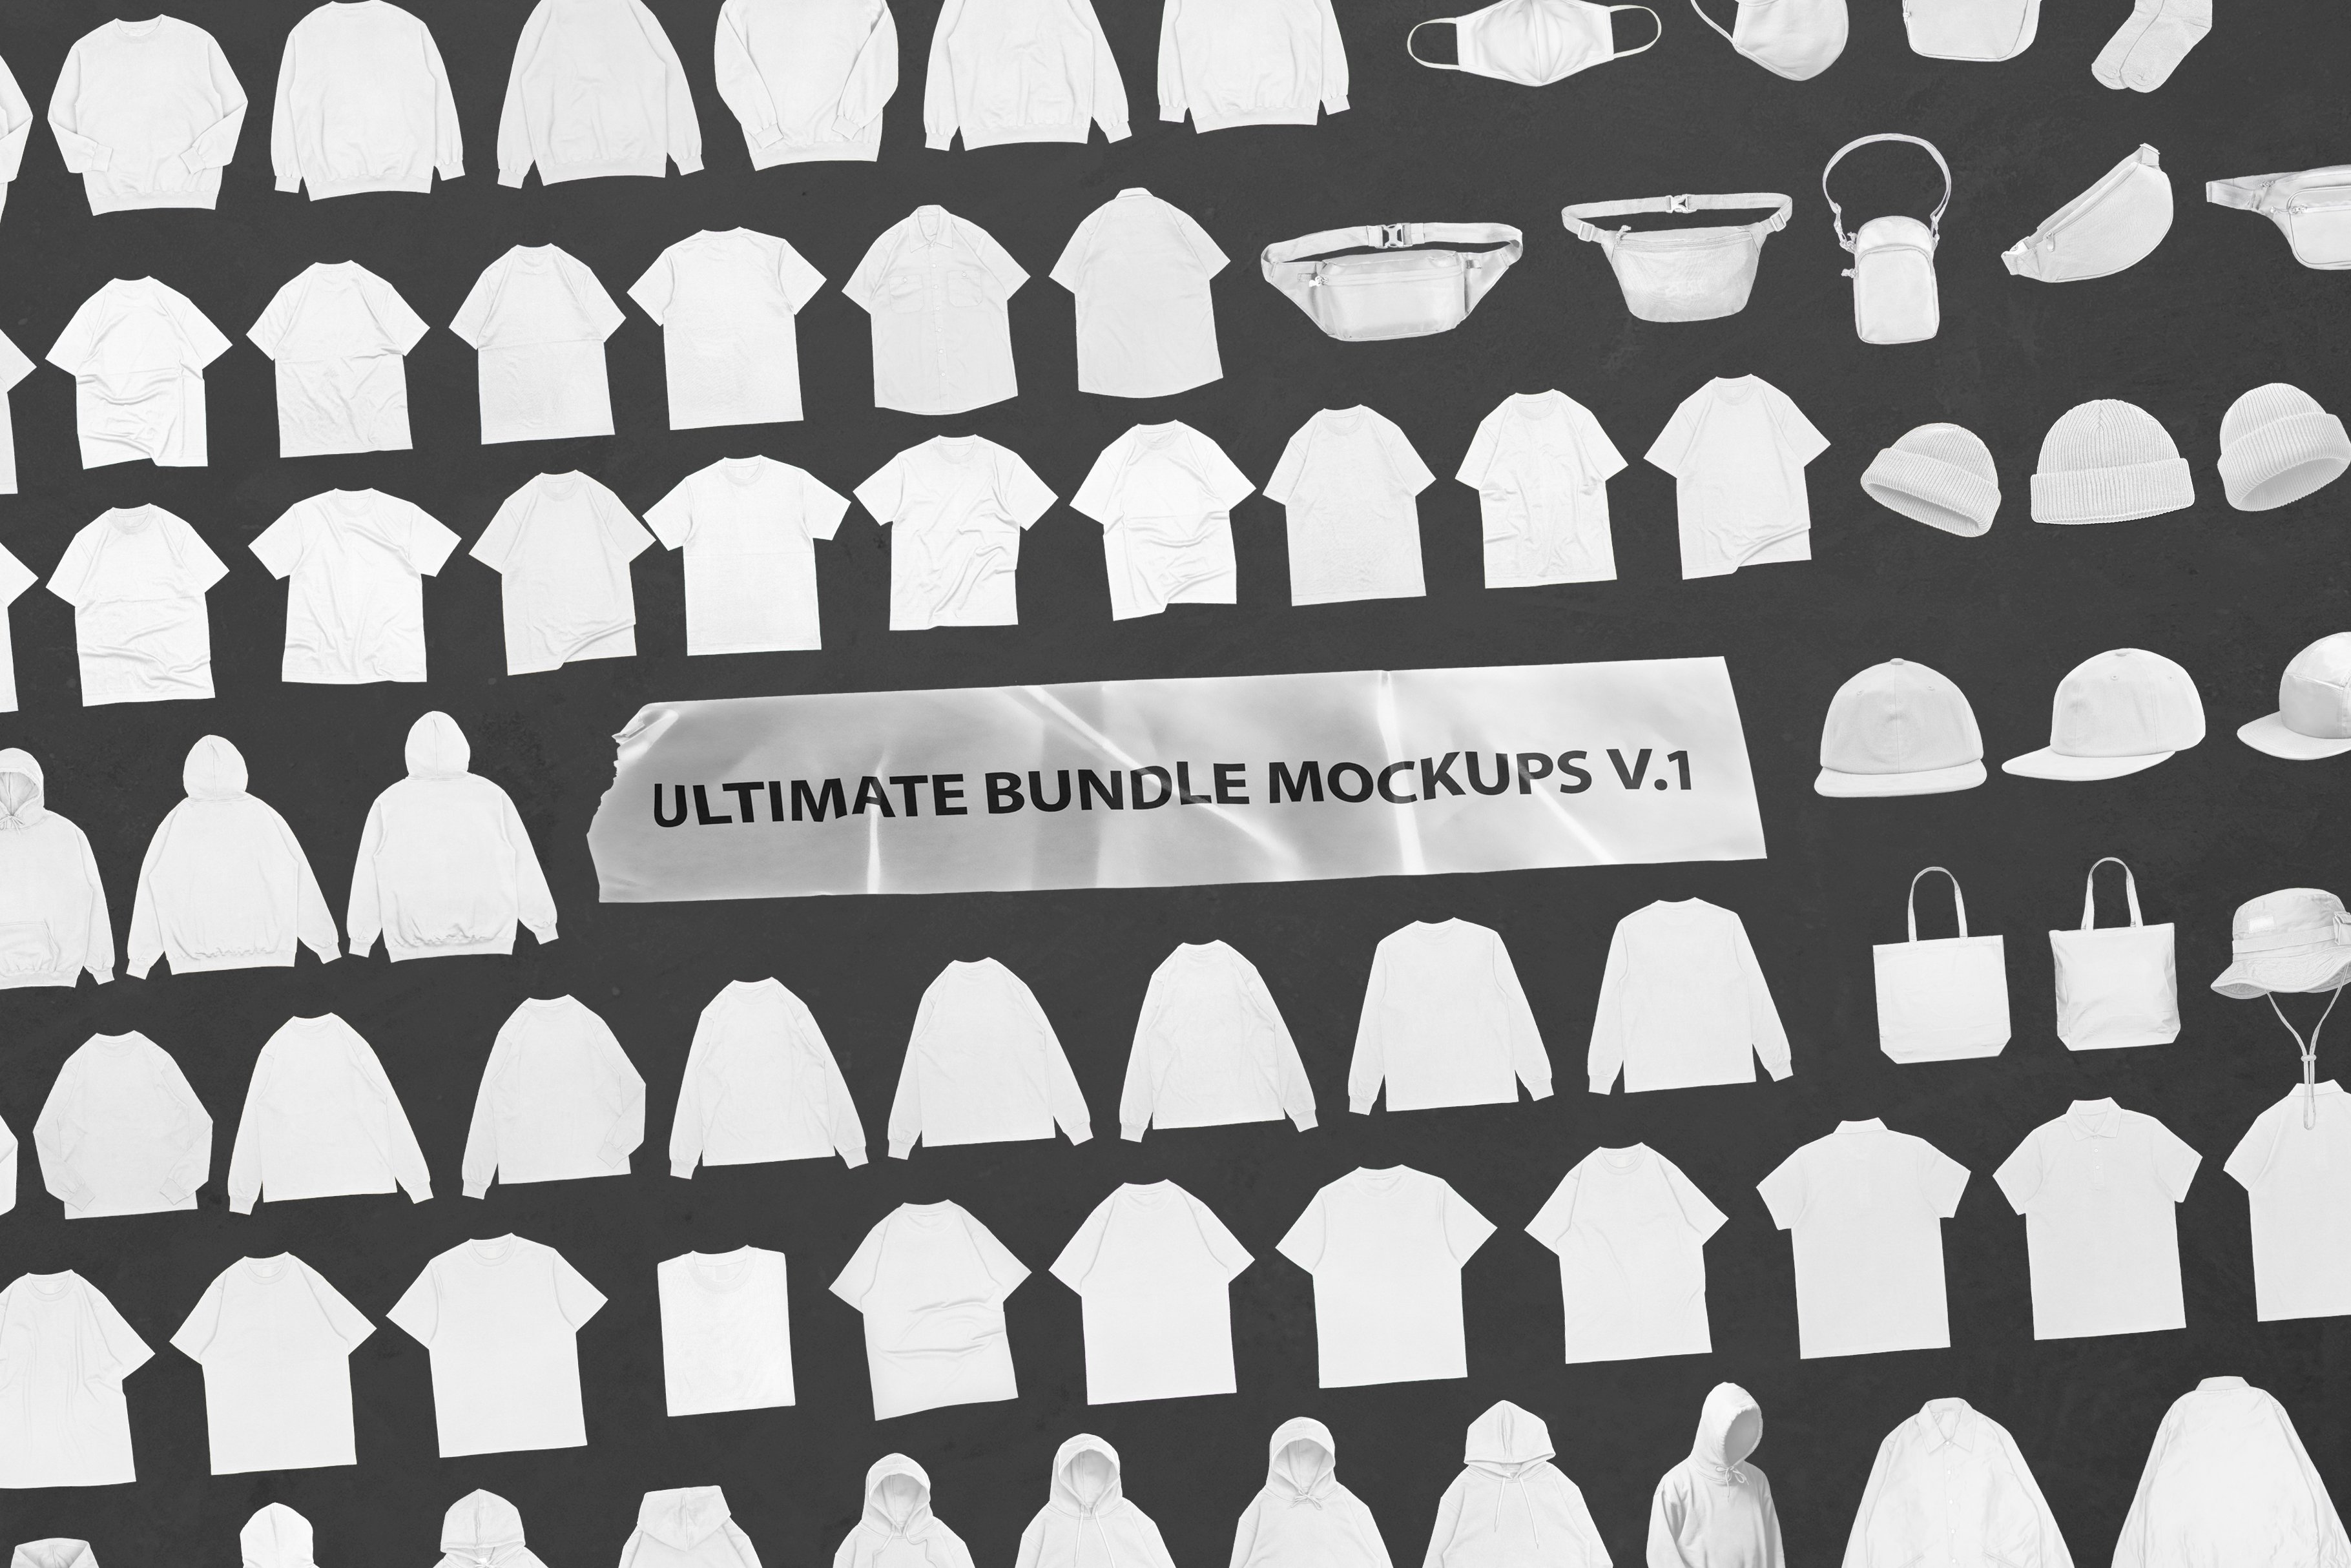 Ultimate Bundle Mockups V.1 preview image.